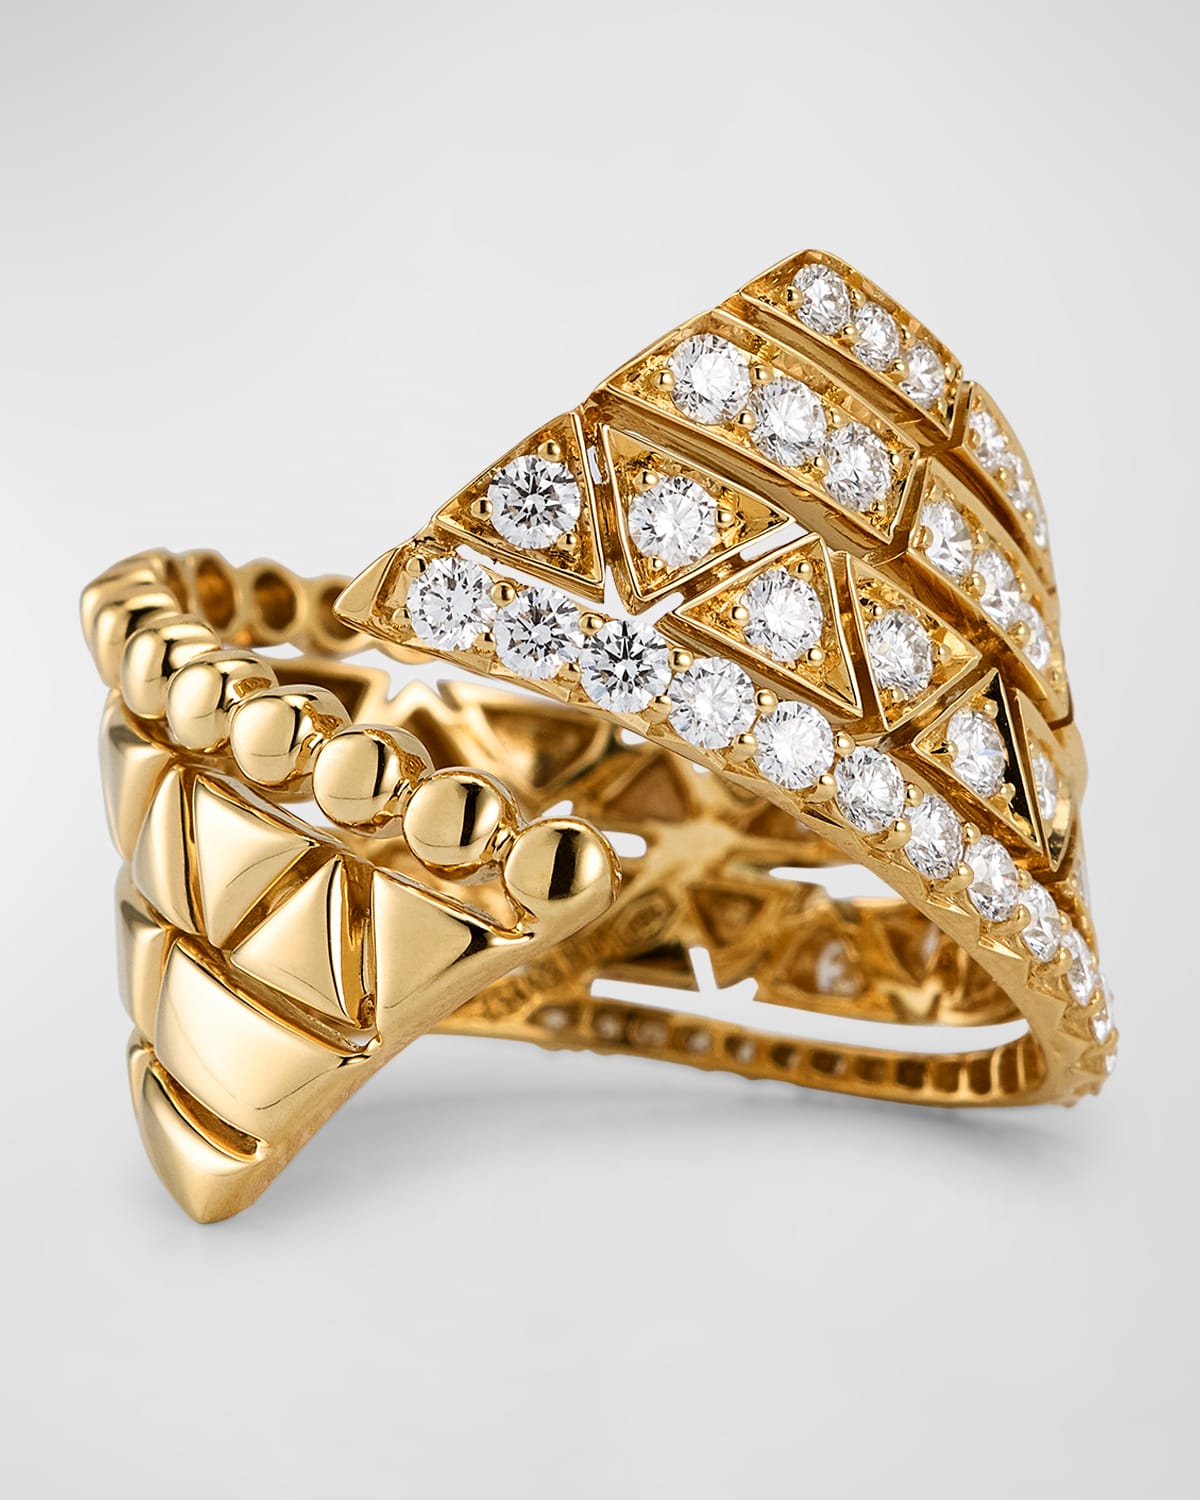 Etho Maria 18k Yellow Gold Reflexion Ring With Diamonds